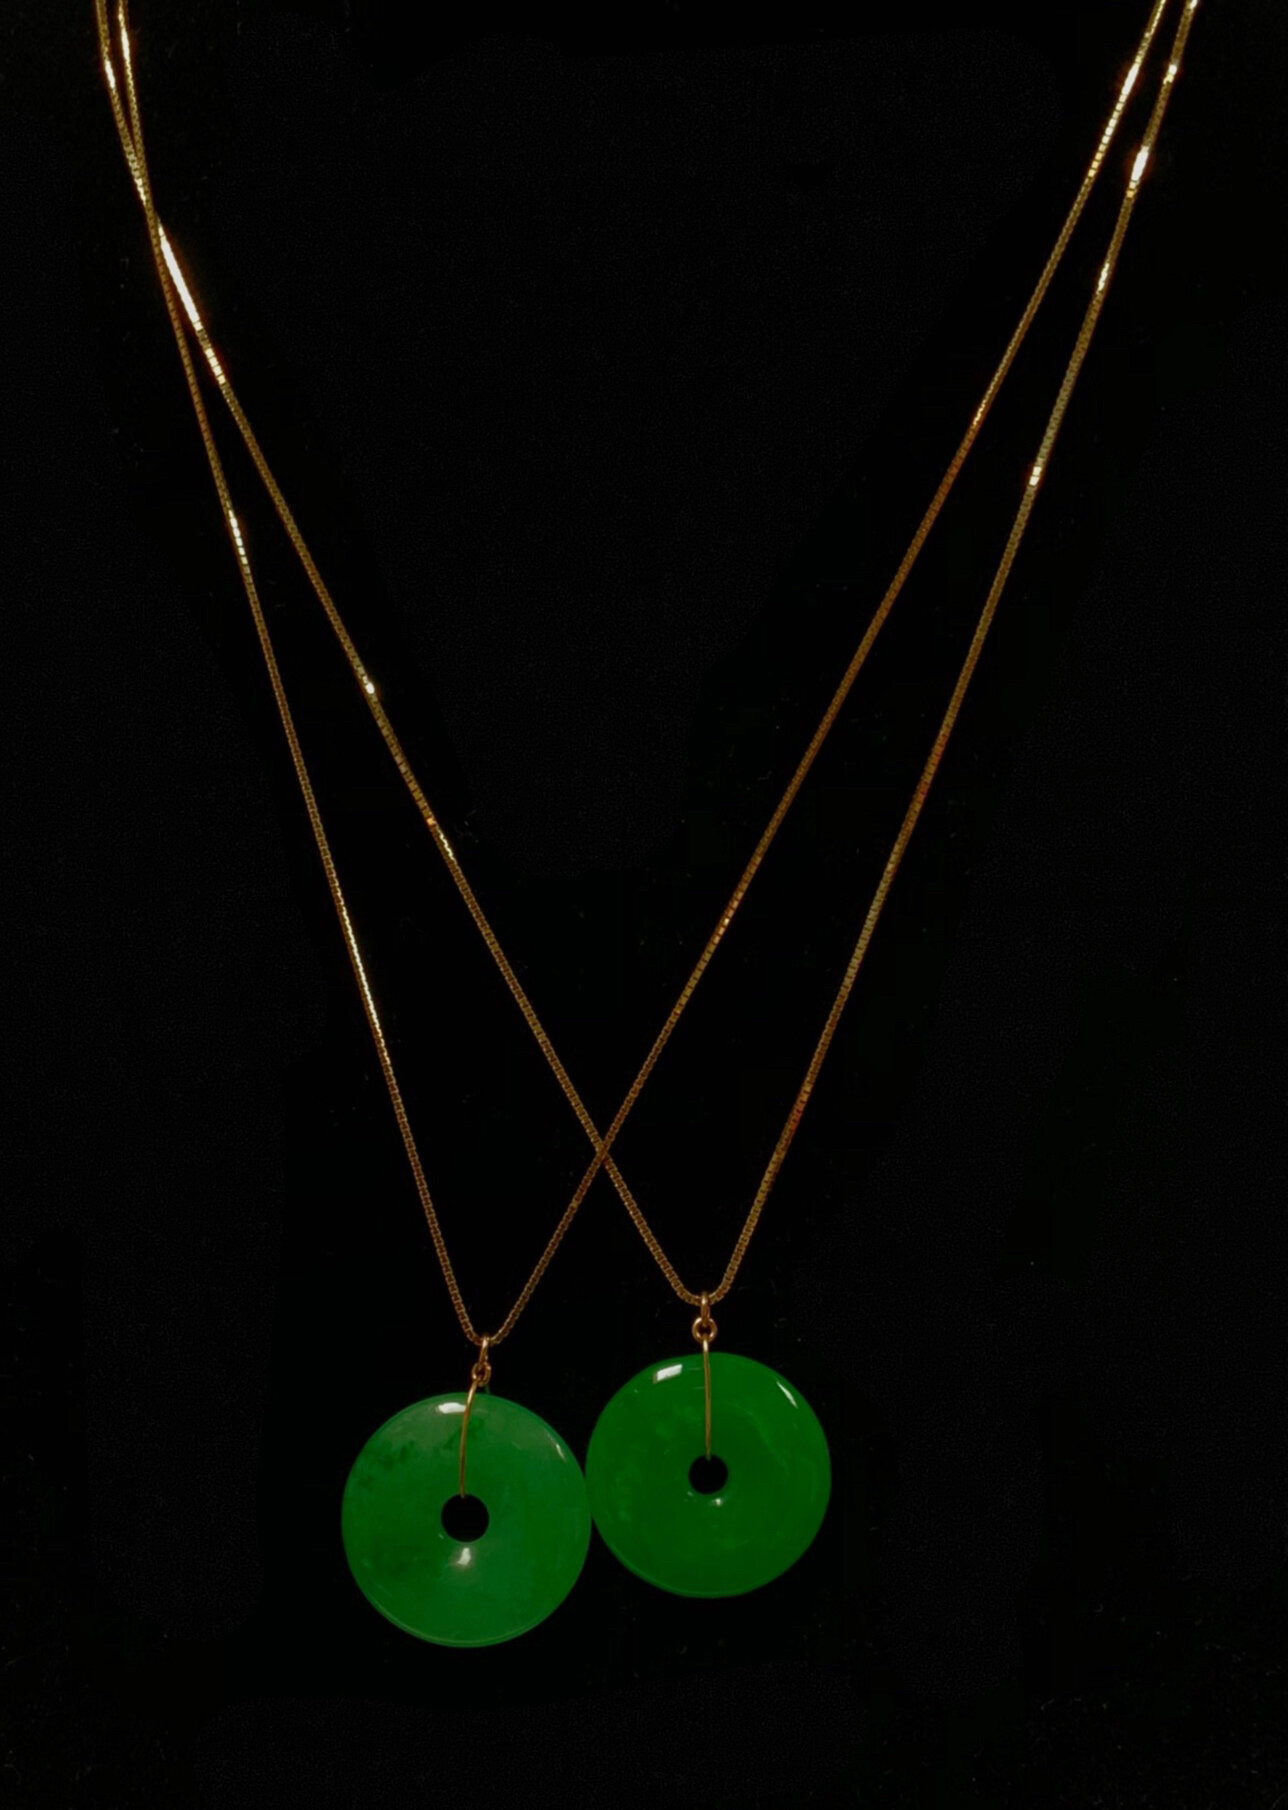 Hetian jade necklace,SectorFan jade pendant,Jade pendant necklace,Adjustable jade necklace,Trendy jade necklace,Simple necklace